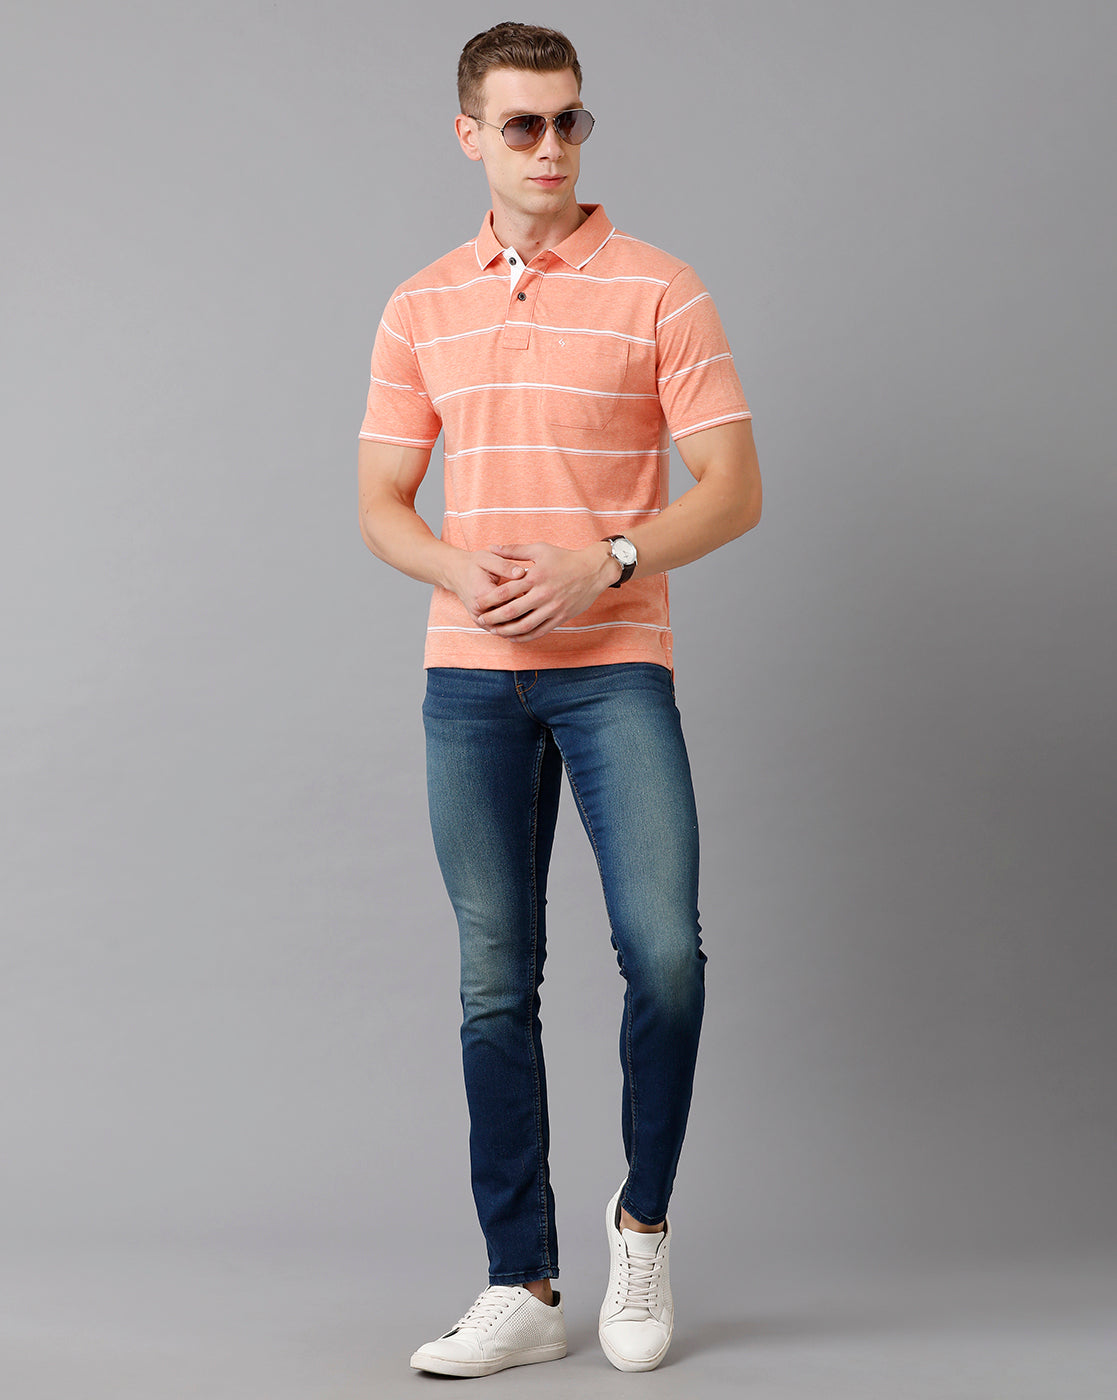 Classic Polo Men's Cotton Blend Striped Authentic Fit Peach T-Shirt | Mel - 211 A